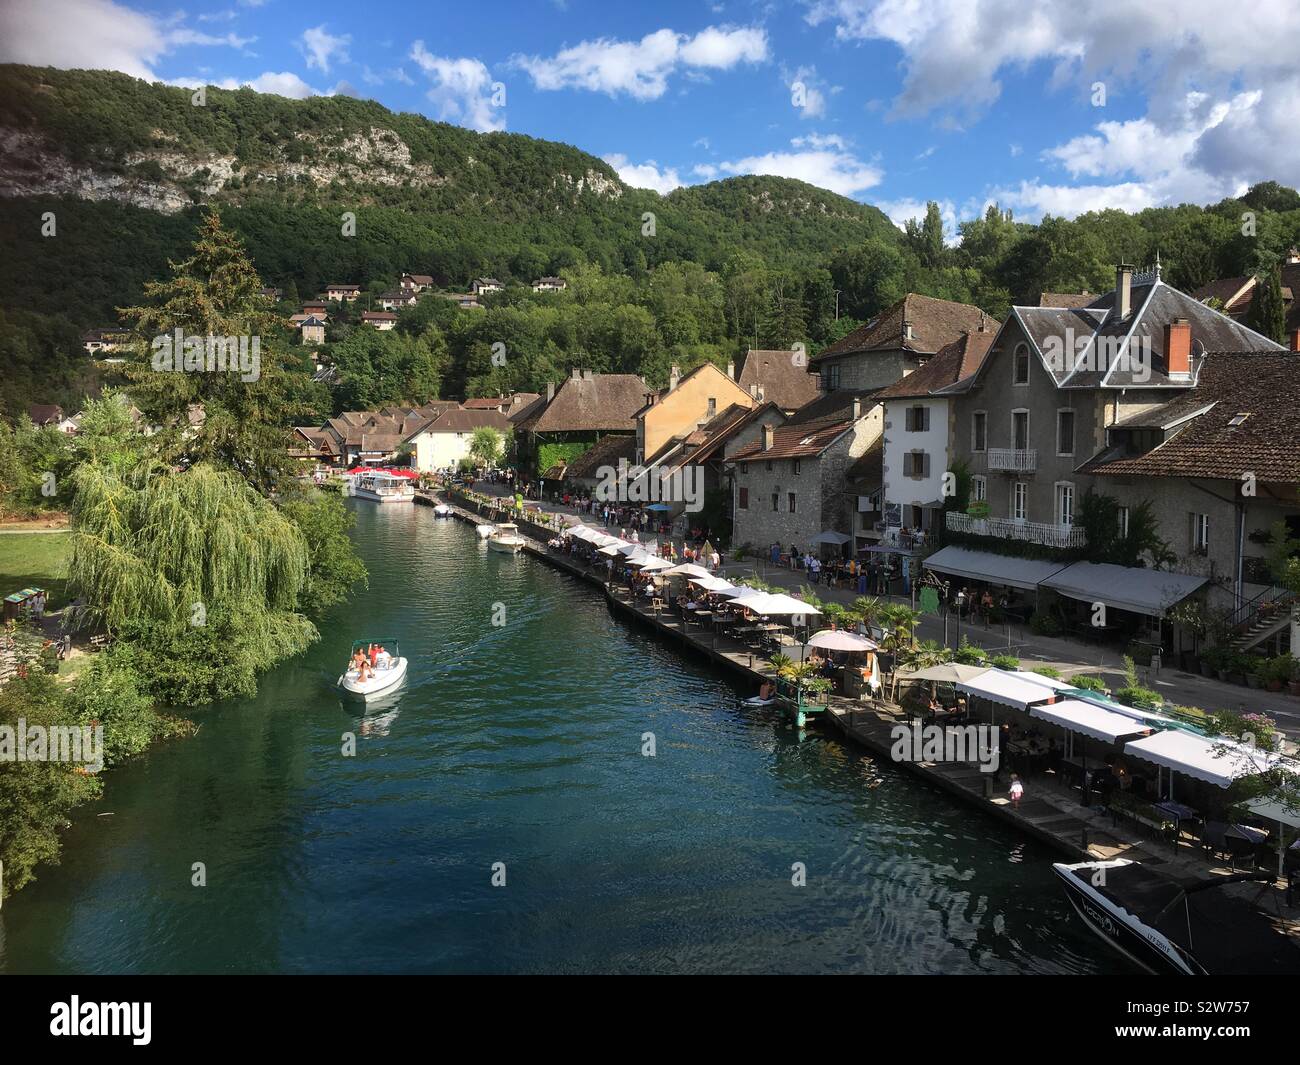 Vista di Chanaz in Francia; si trova sulle rive del Canal de Savière. La fiorita village, soprannominato "avoie la piccola Venezia", ha molte delizie per i visitatori tra cui gite in barca & caffè. Foto Stock